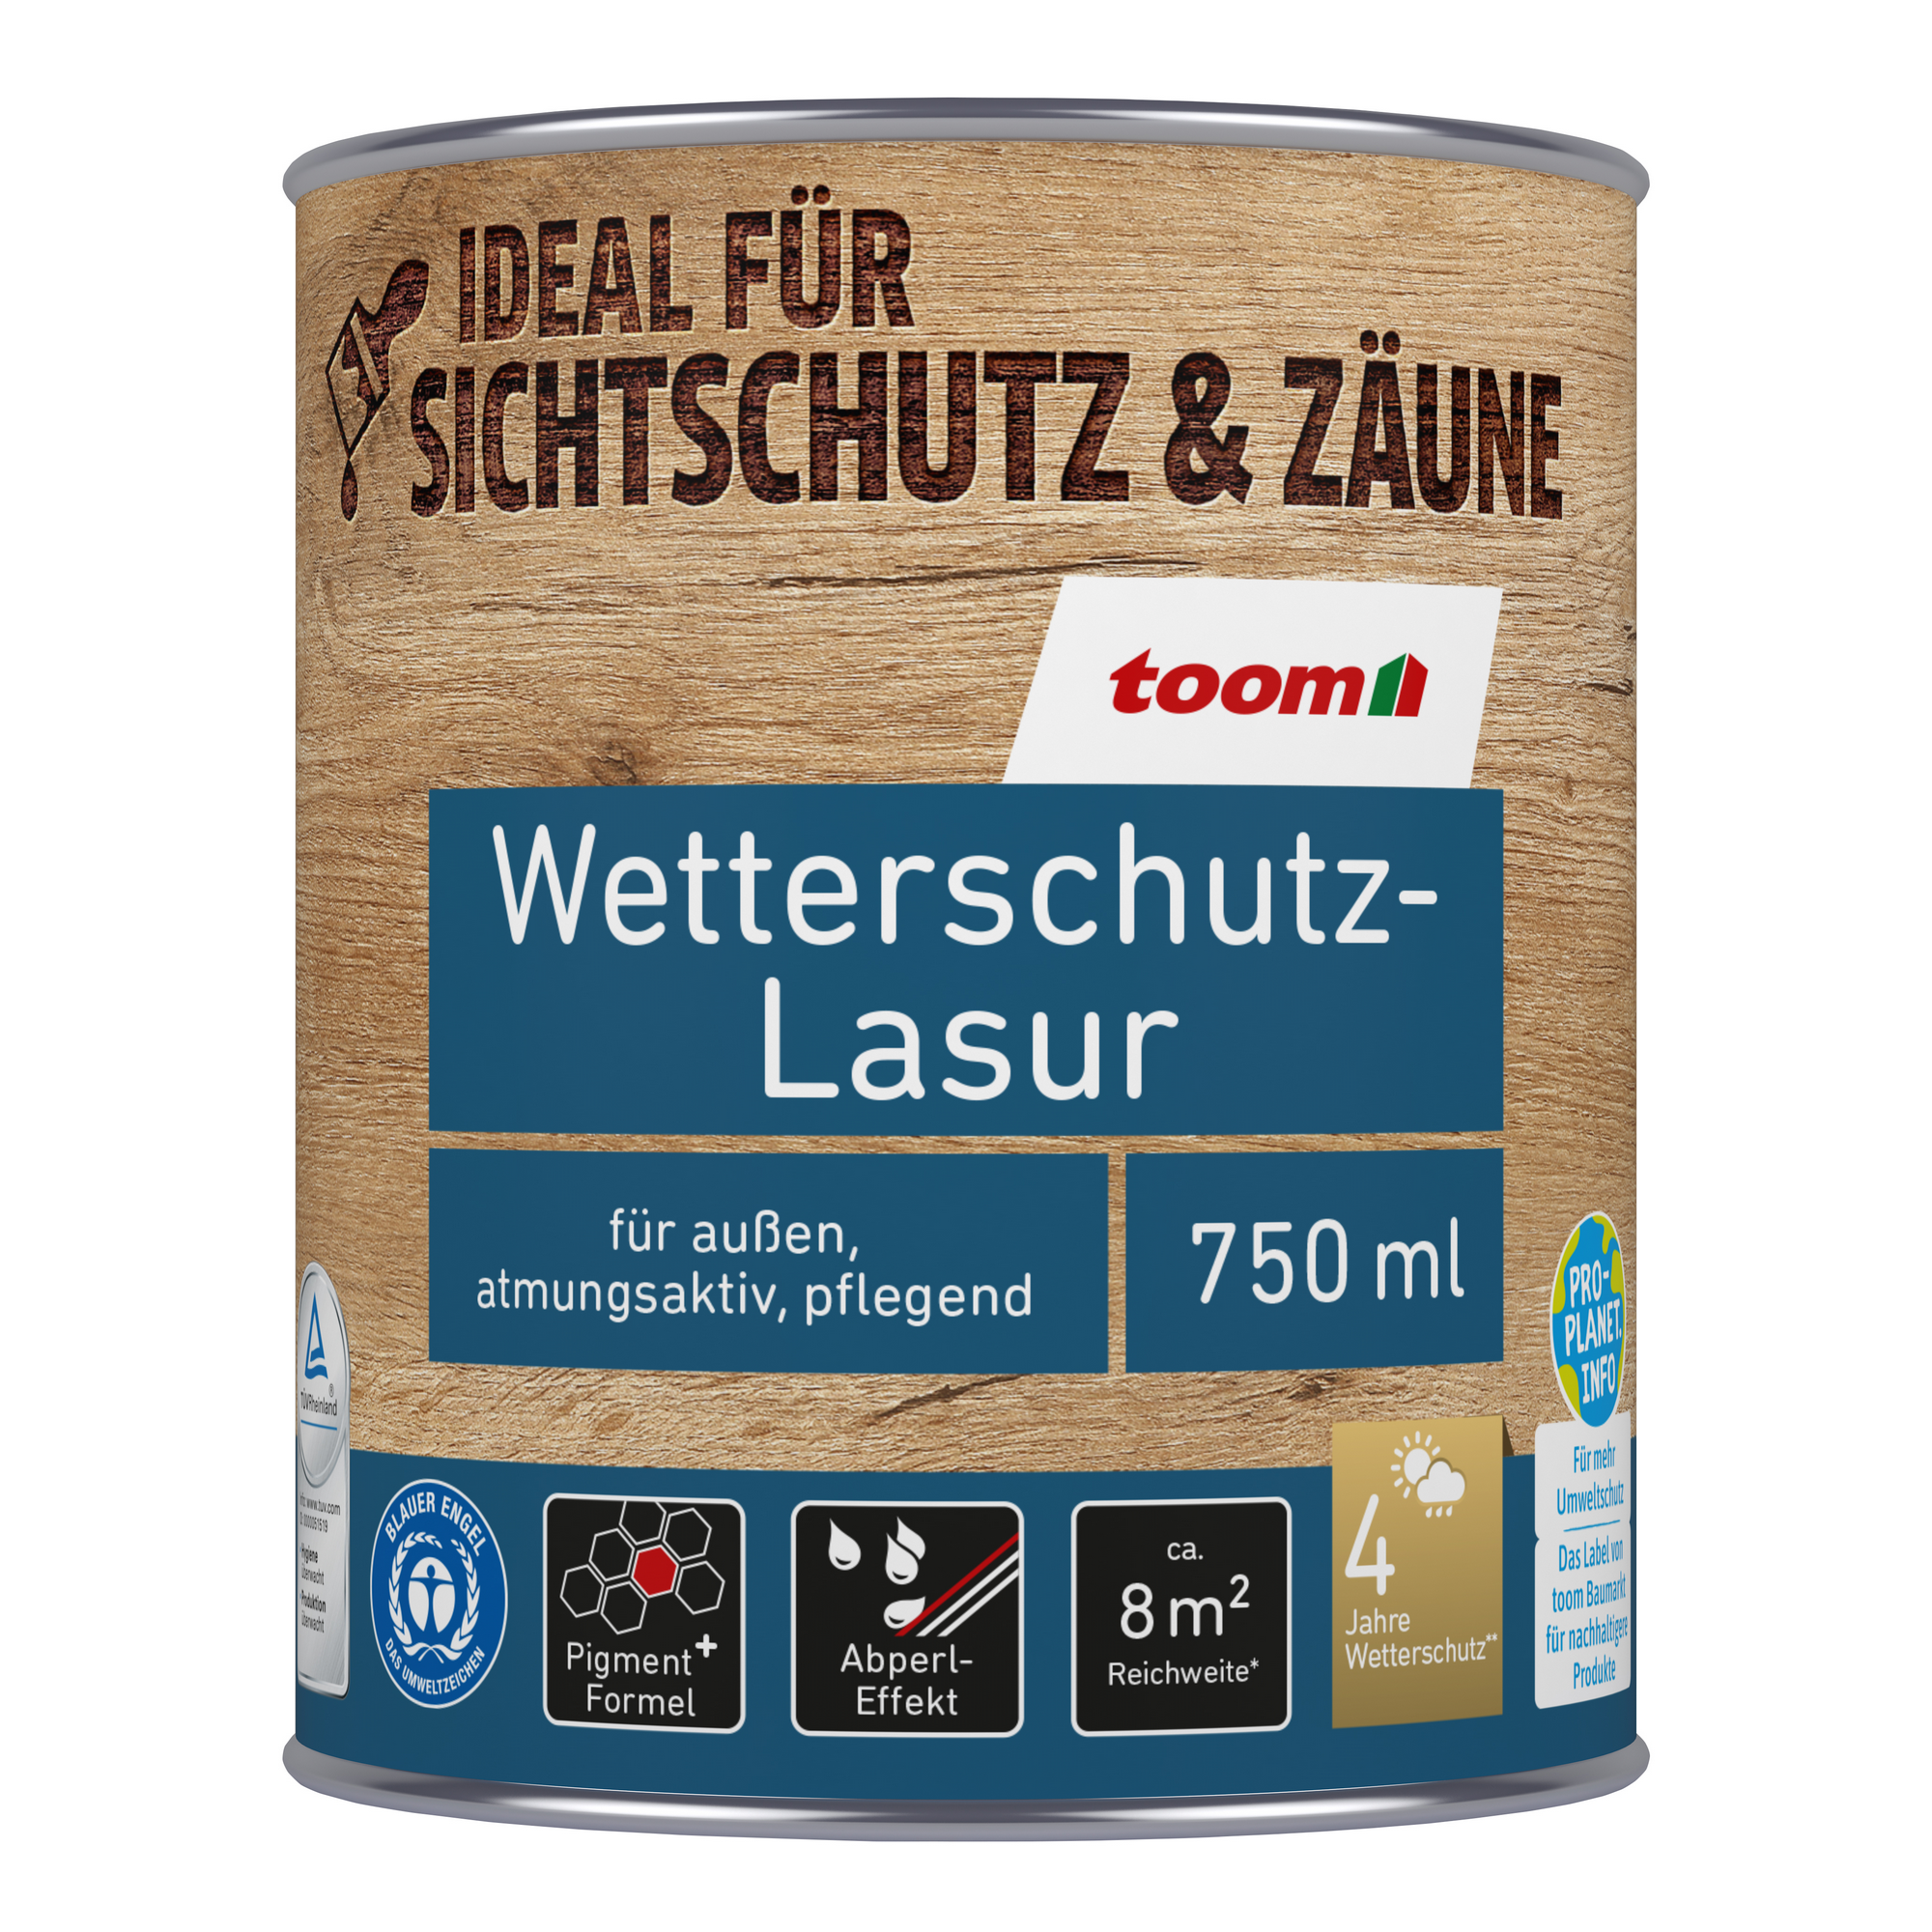 Wetterschutz-Lasur kieferfarben 750 ml + product picture